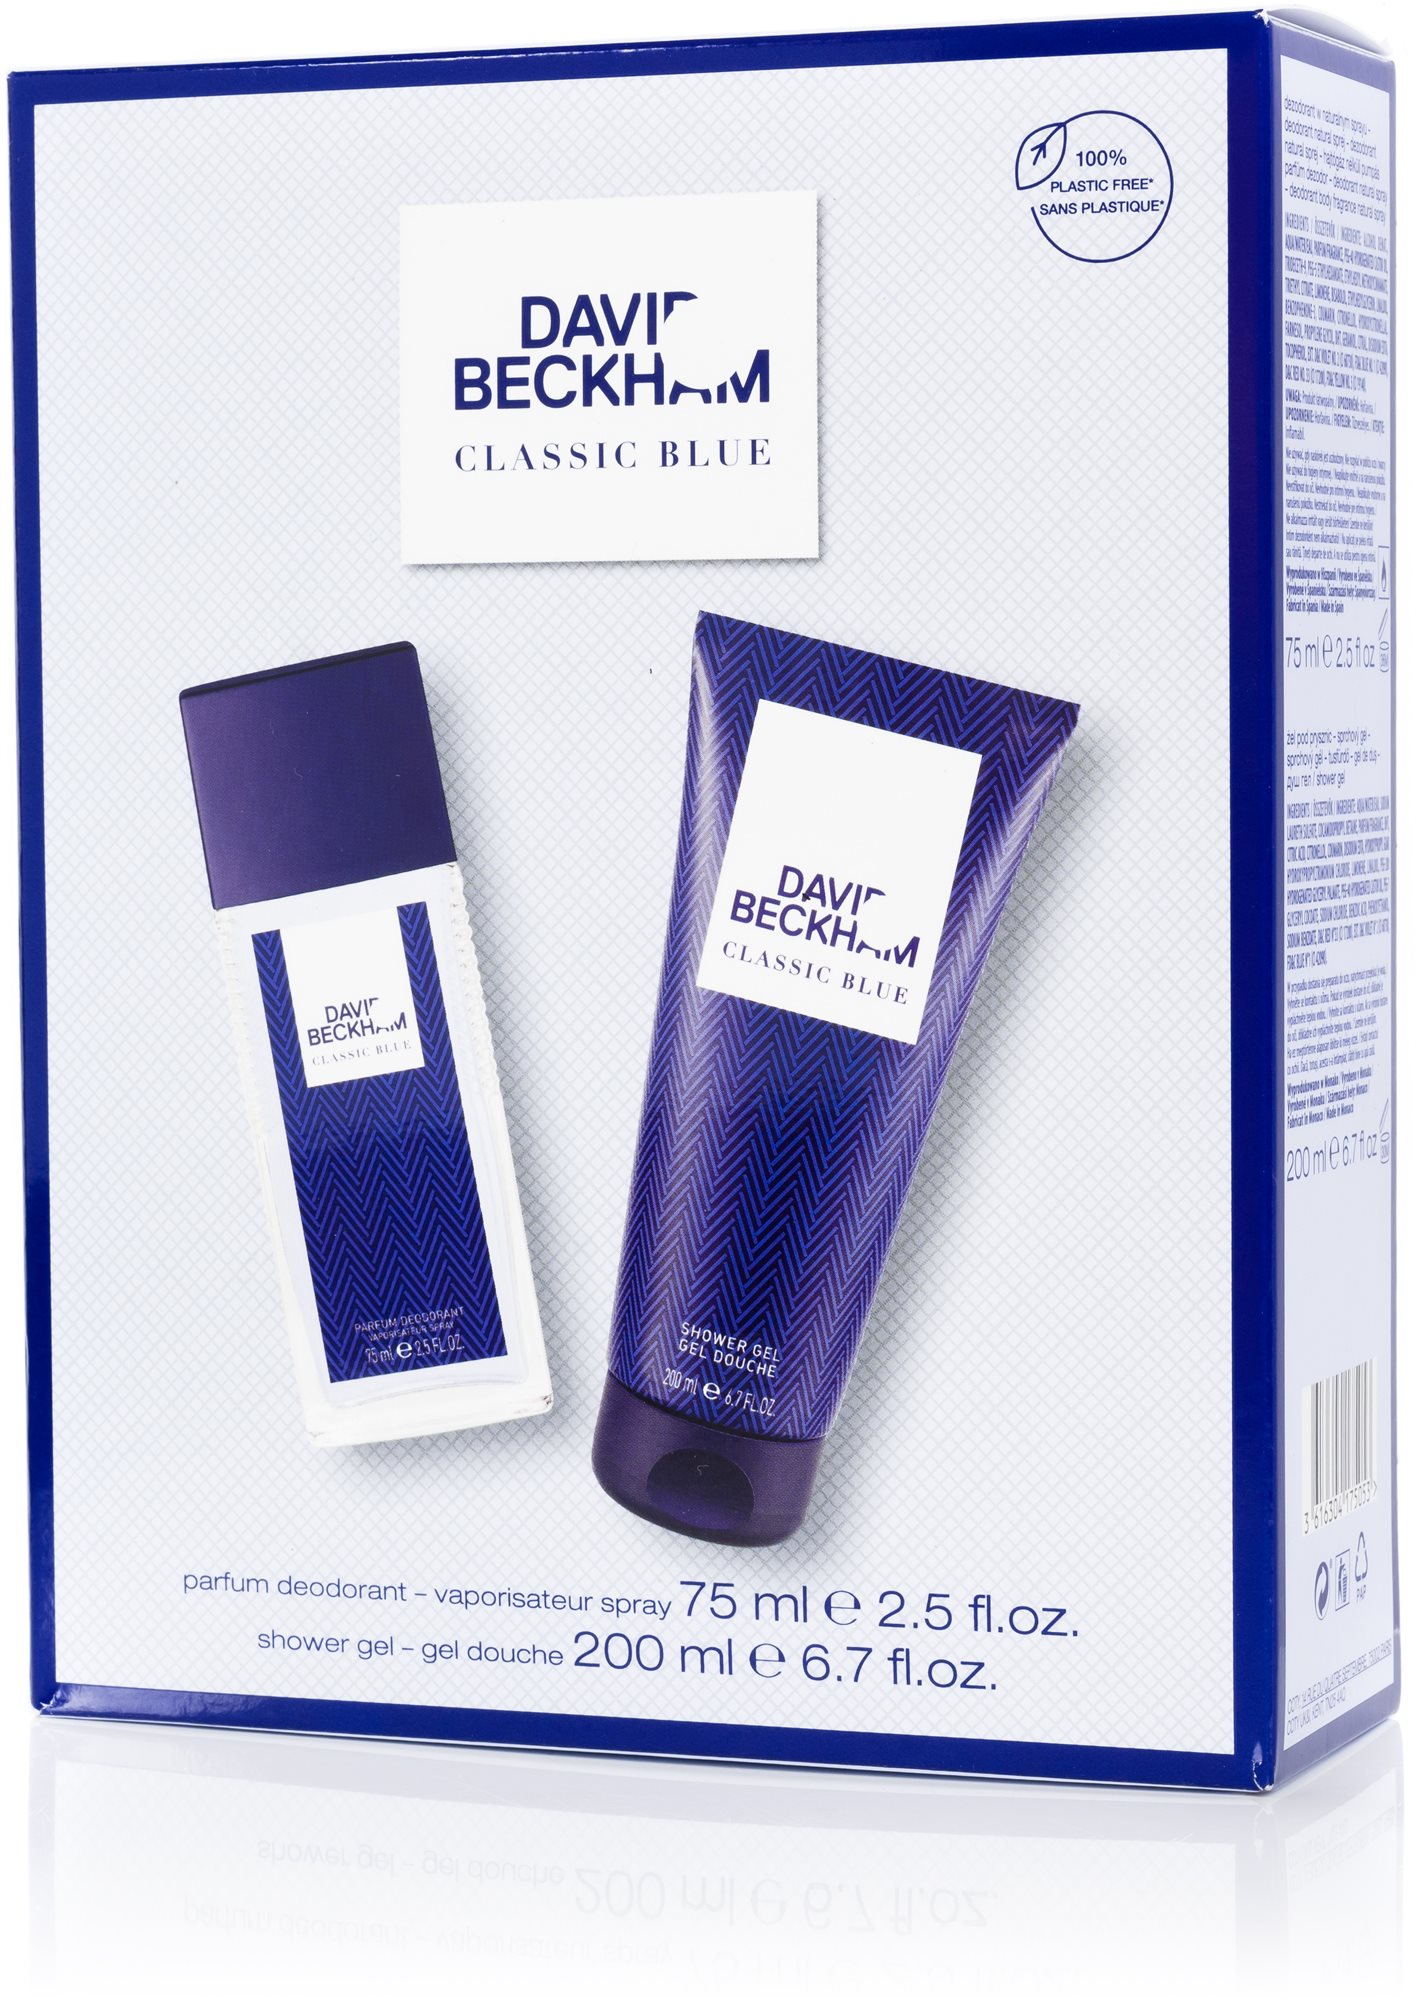 Kozmetikai ajándékcsomag DAVID BECKHAM Classic Blue Szett 275 ml